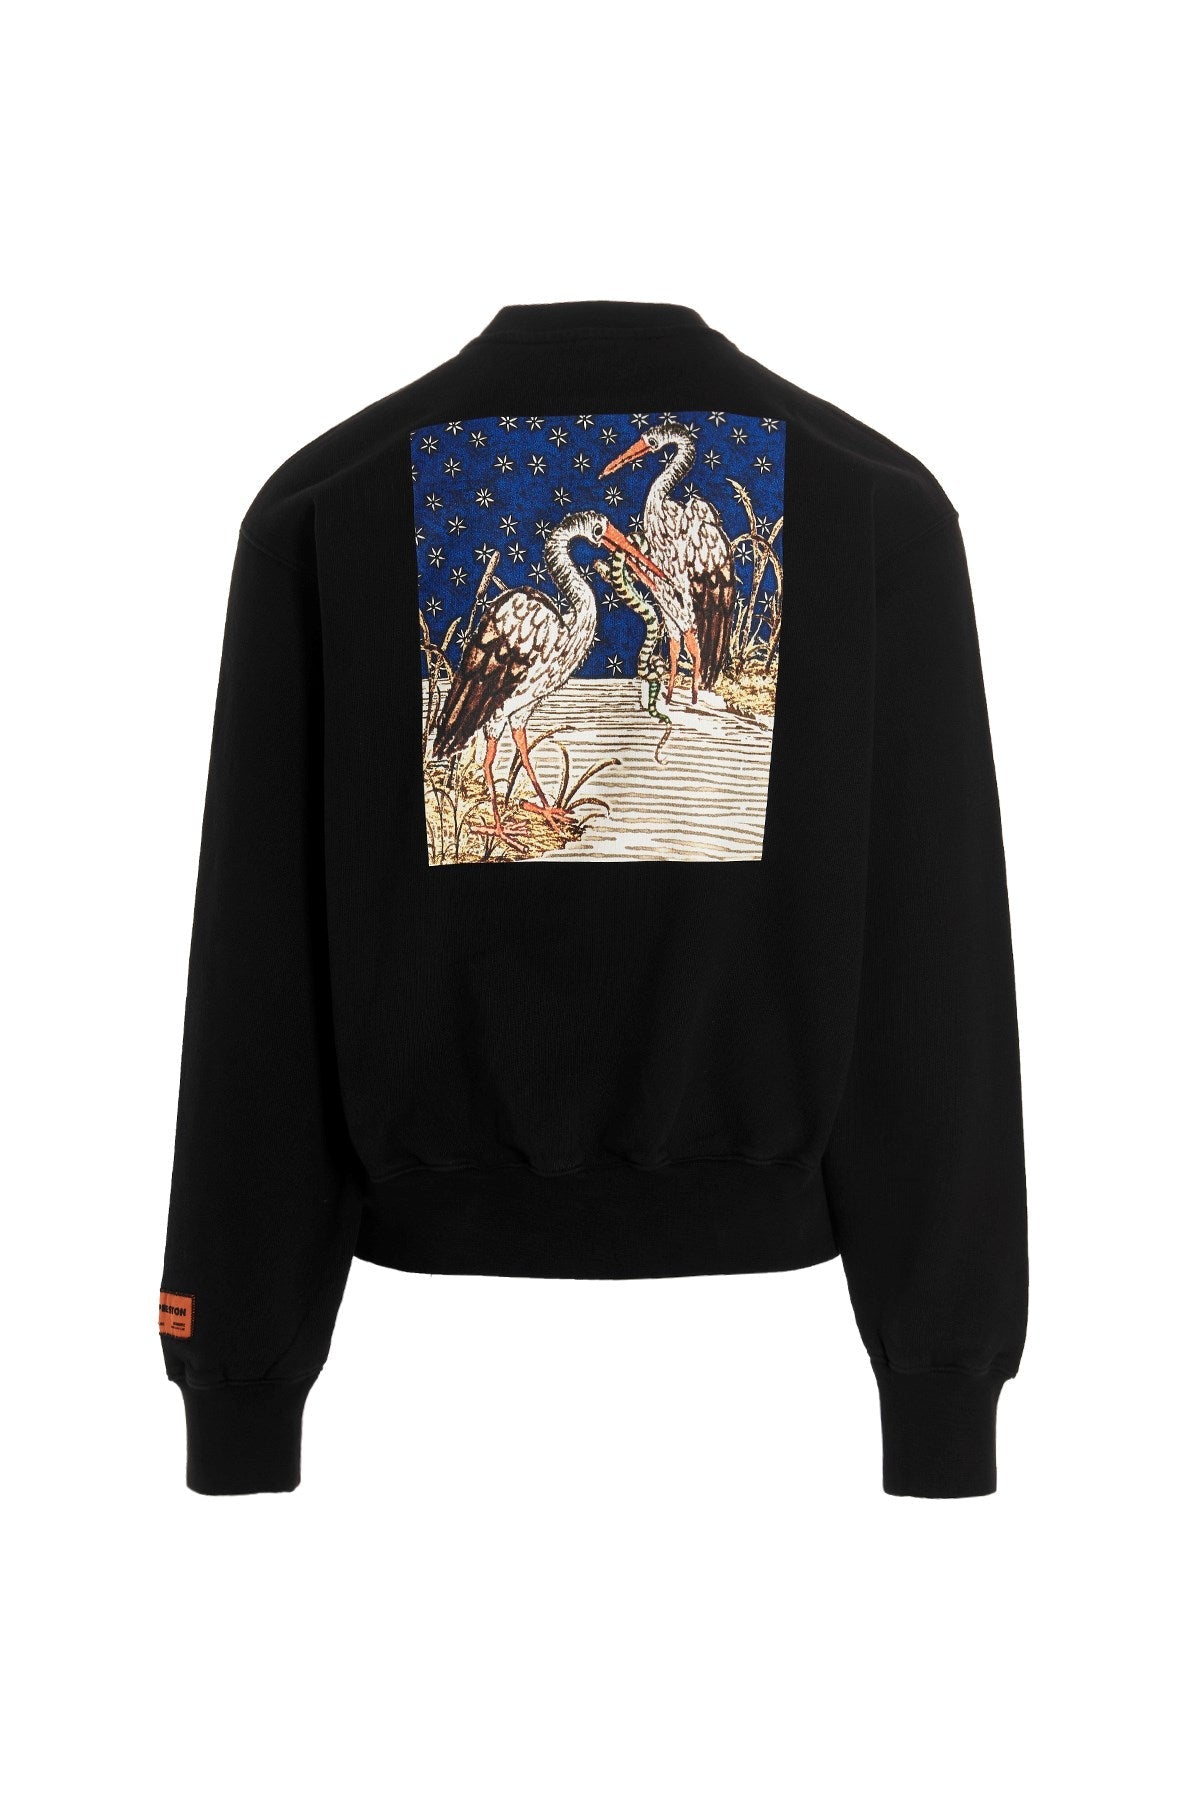 Heron Preston Medieval Sweatshirt - S - Escape Menswear